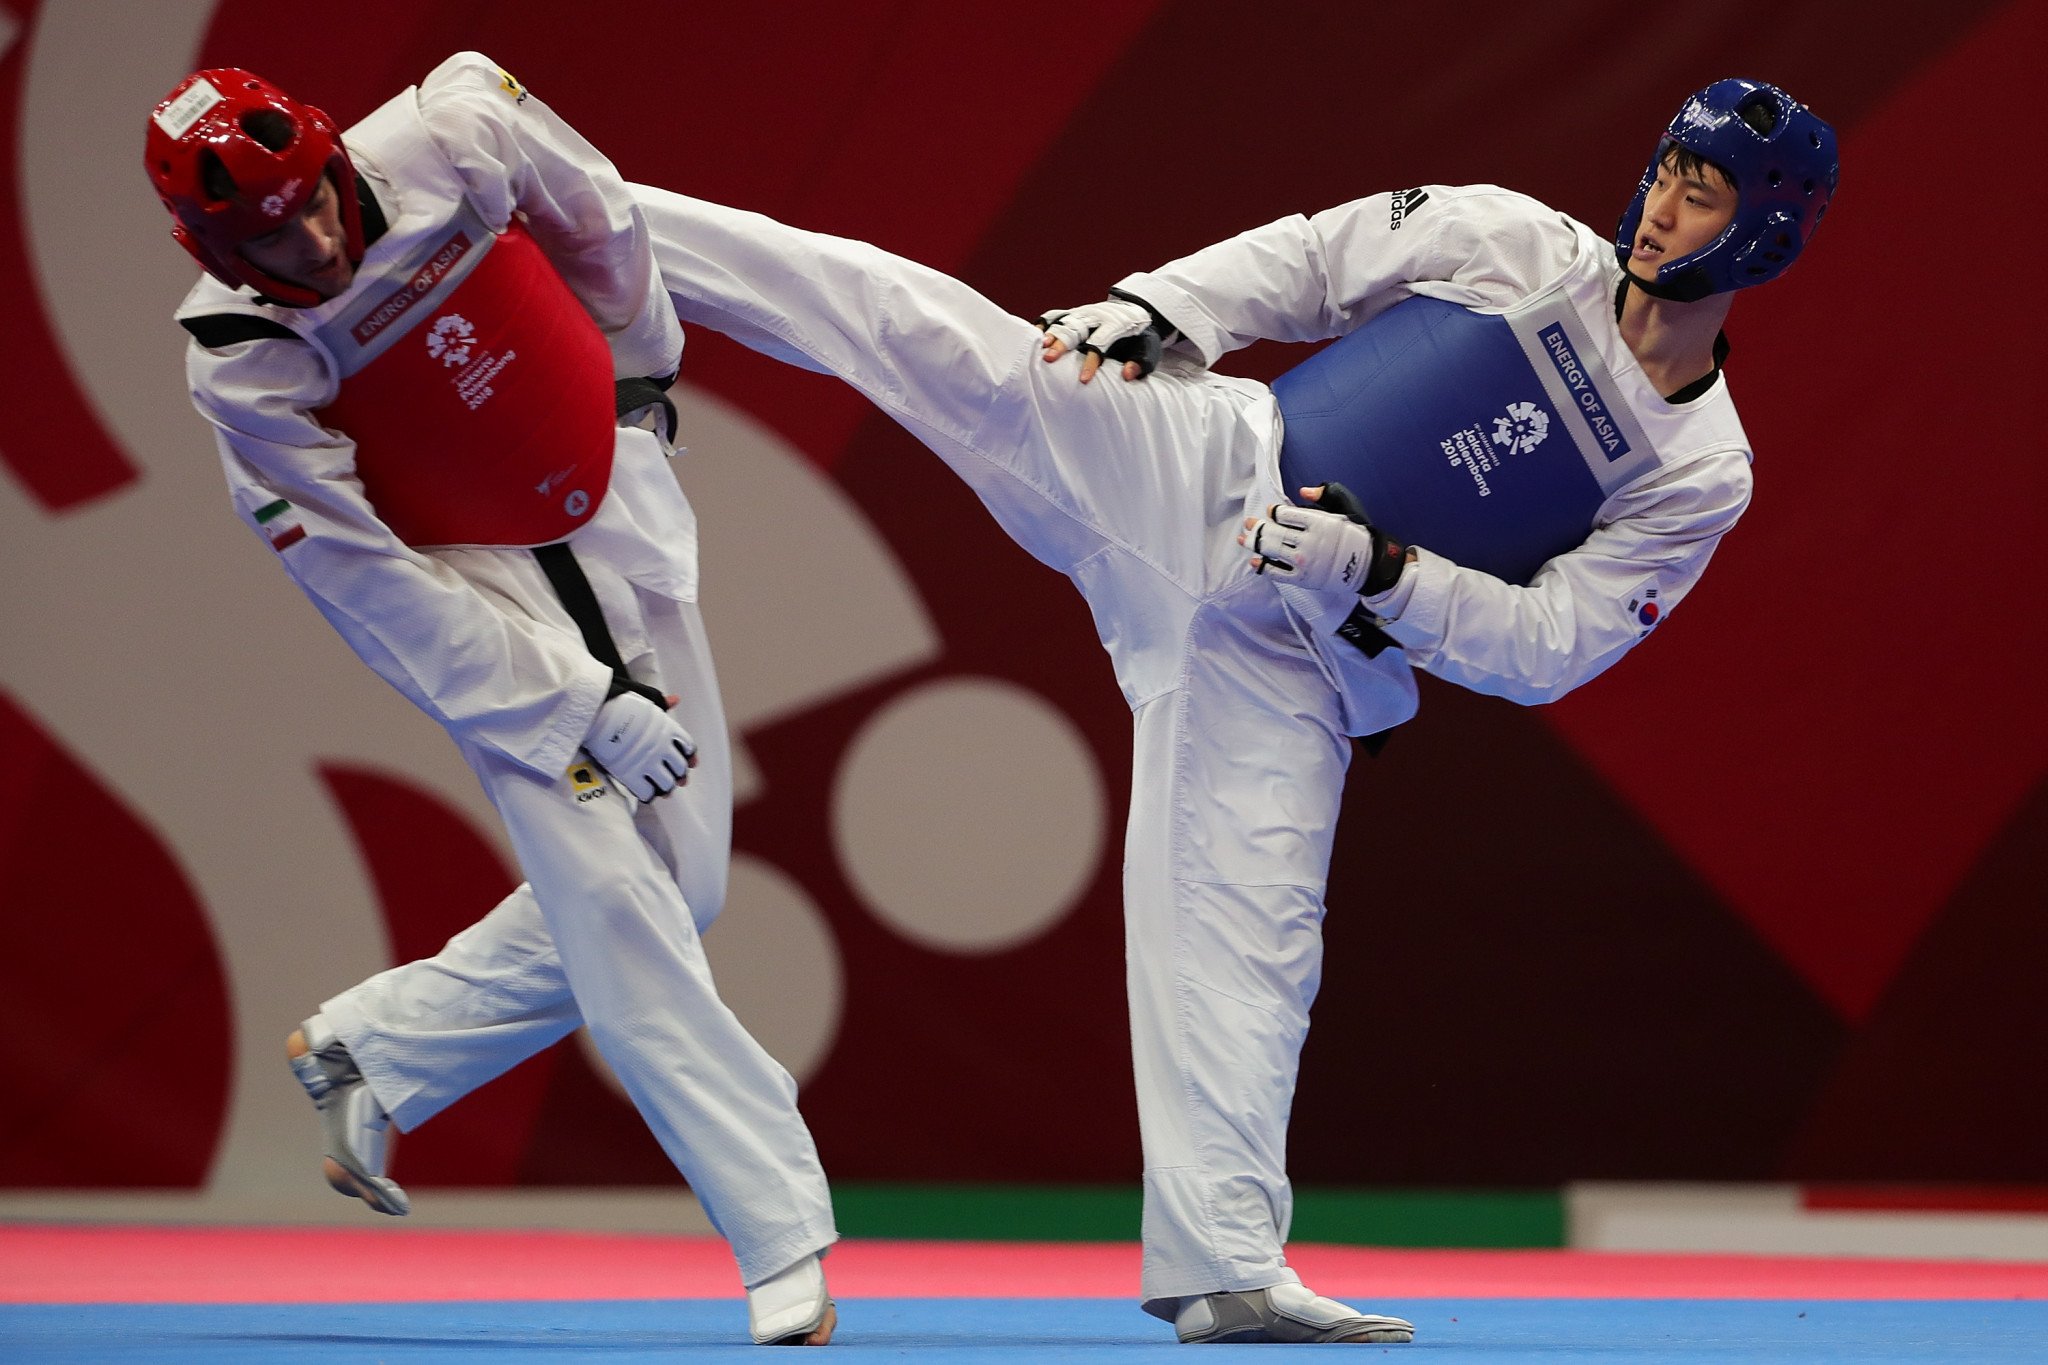 South Korea aim for second consecutive overall title at World Taekwondo